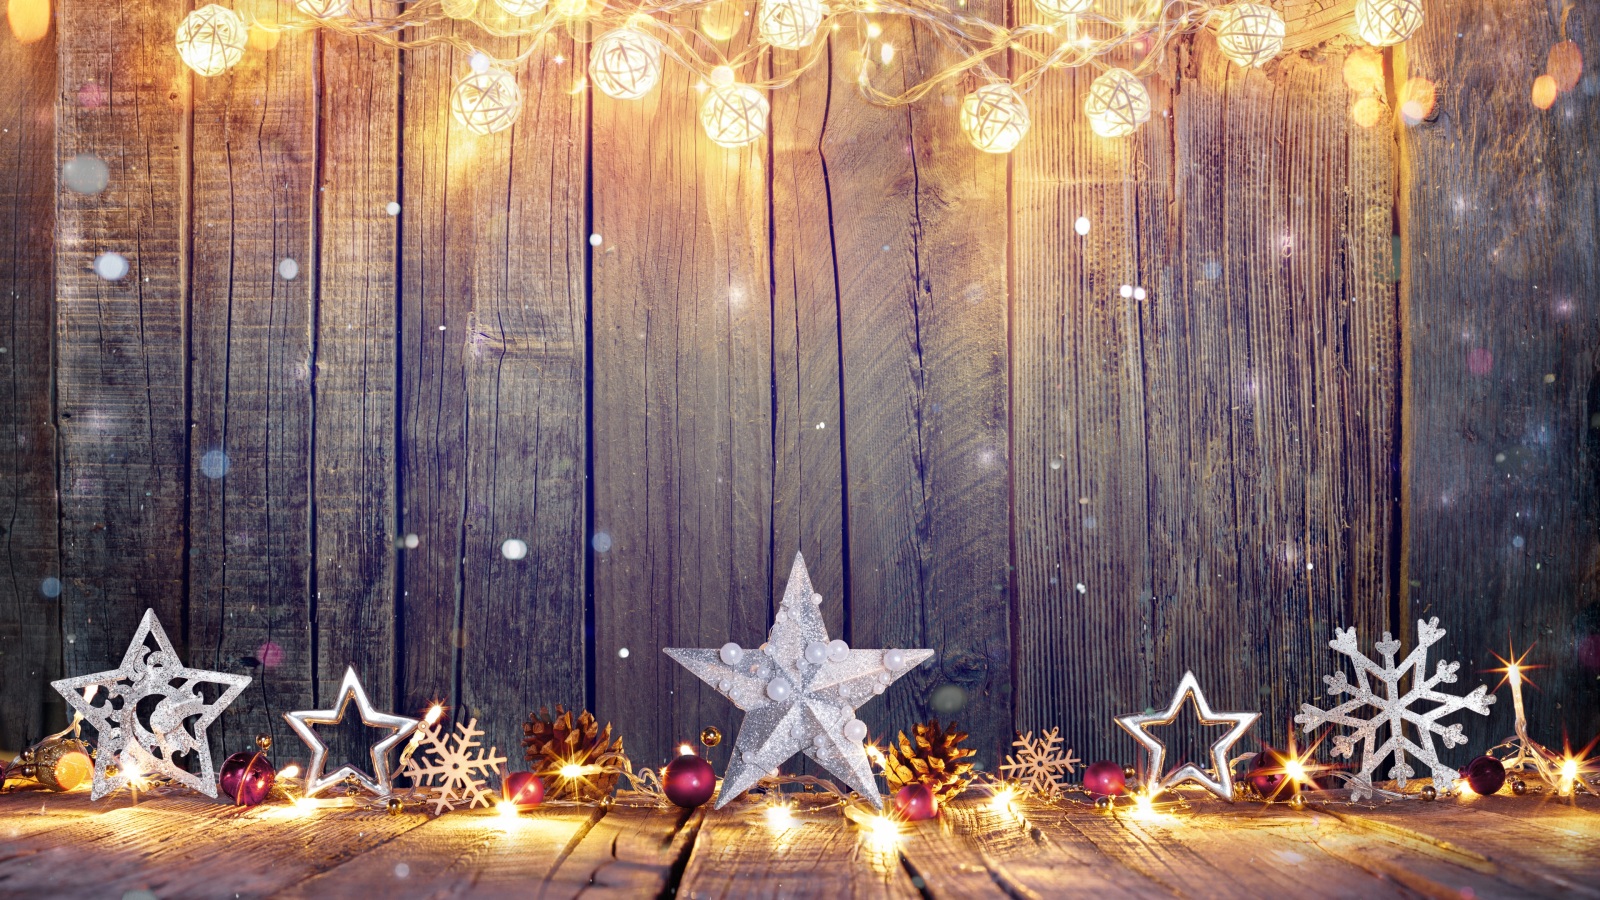 Christmas star: Ngôi sao Giáng Sinh là biểu tượng quan trọng của mùa lễ hội này, mang đến cho chúng ta niềm tin và hy vọng vào một điều gì đó rực rỡ và to lớn hơn bản thân. Hãy ngắm nhìn những hình ảnh tuyệt đẹp về ngôi sao Giáng Sinh để cảm nhận được sự nhiệt tình của mùa lễ hội này.